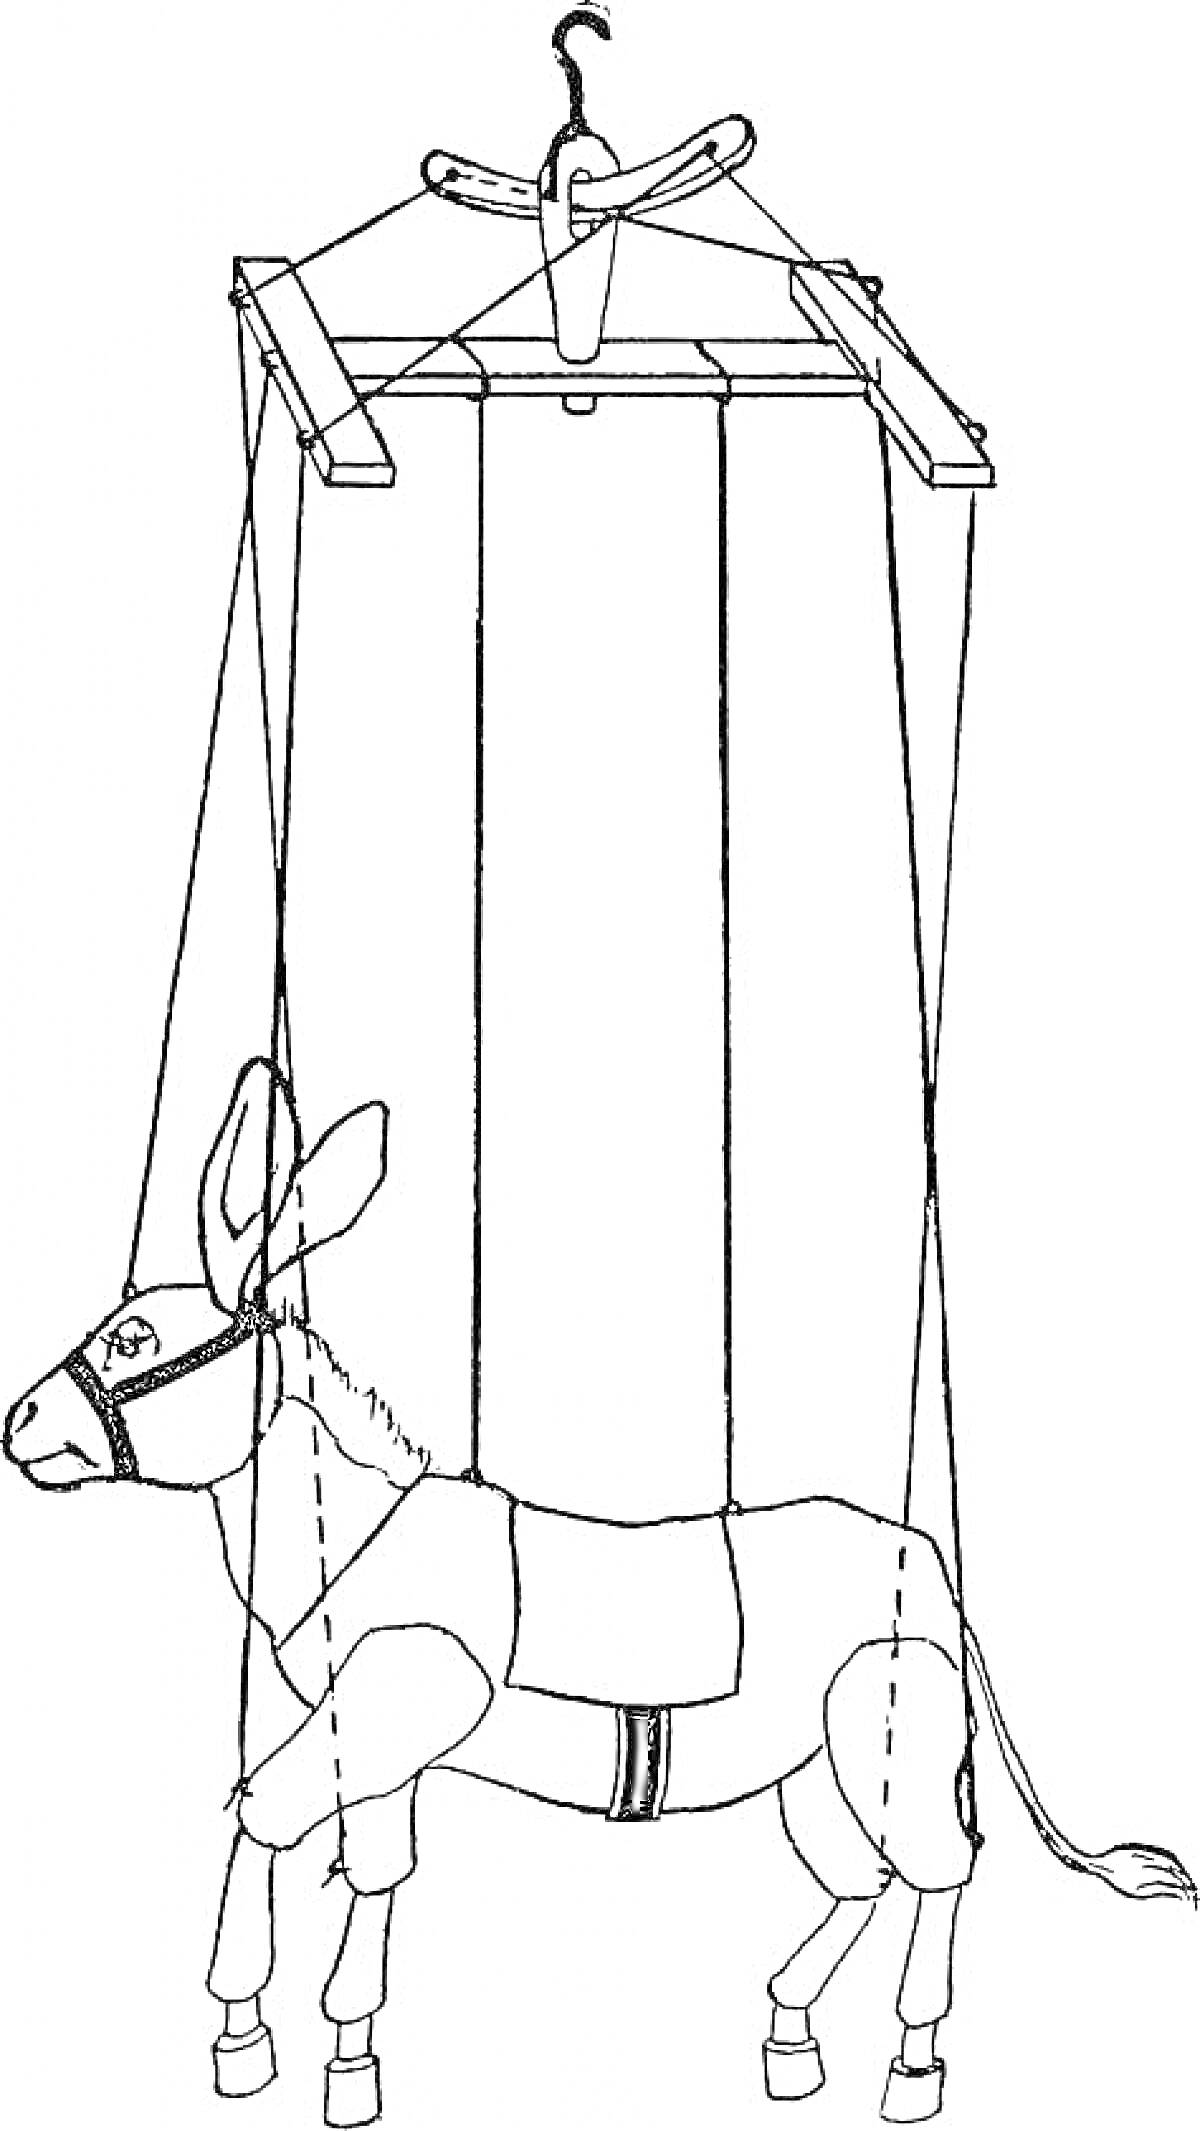 Раскраска Марионетка-ослик с уздечкой и управляемыми веревками, на управлении находится деревянная перекладина с крючком.